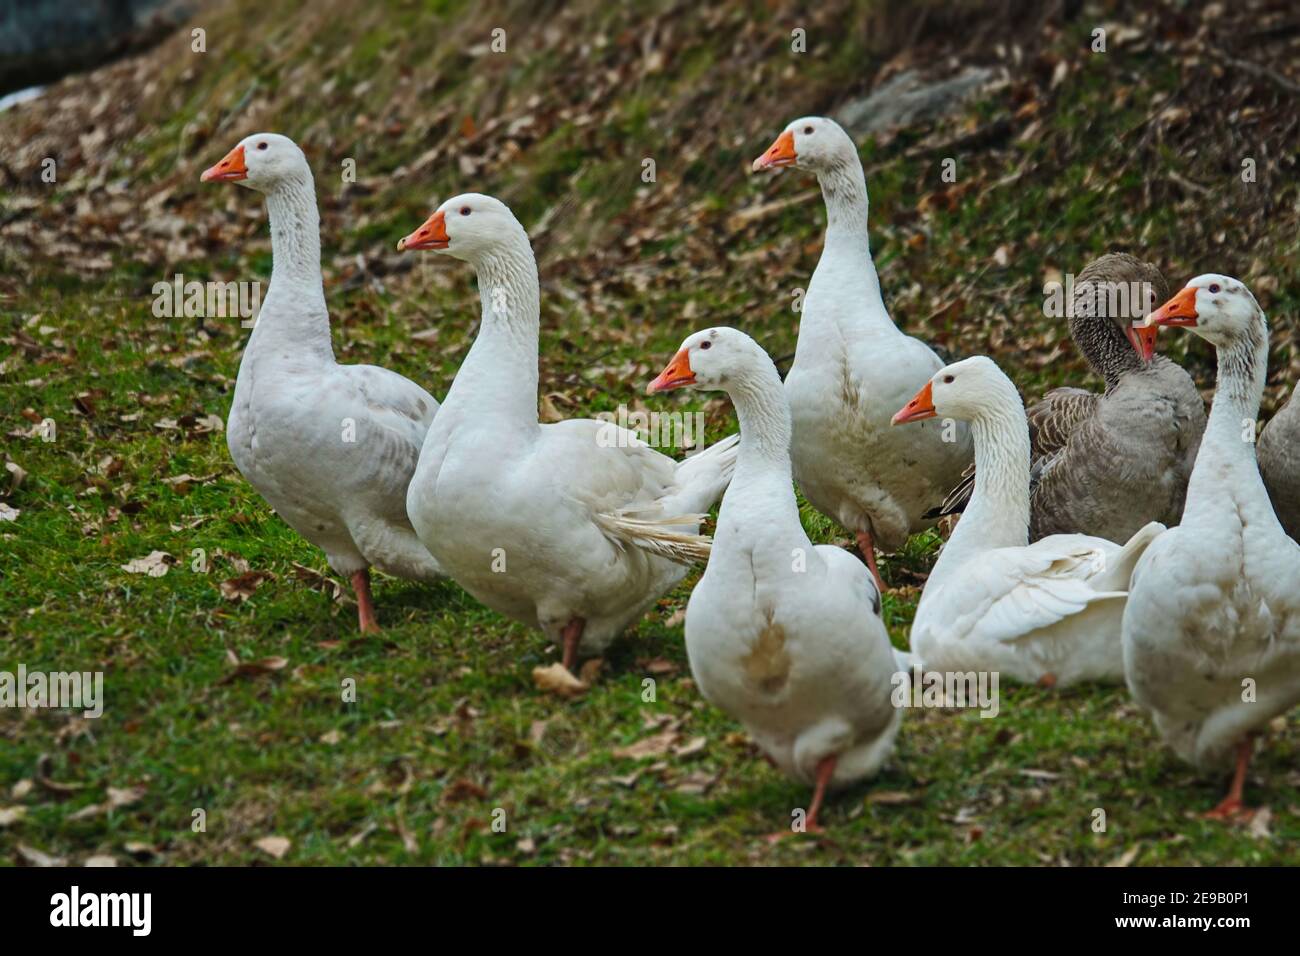 Un grupo de patos blancos y gansos con robles de naranja domesticaban aves para carne y plumas. Foto de stock